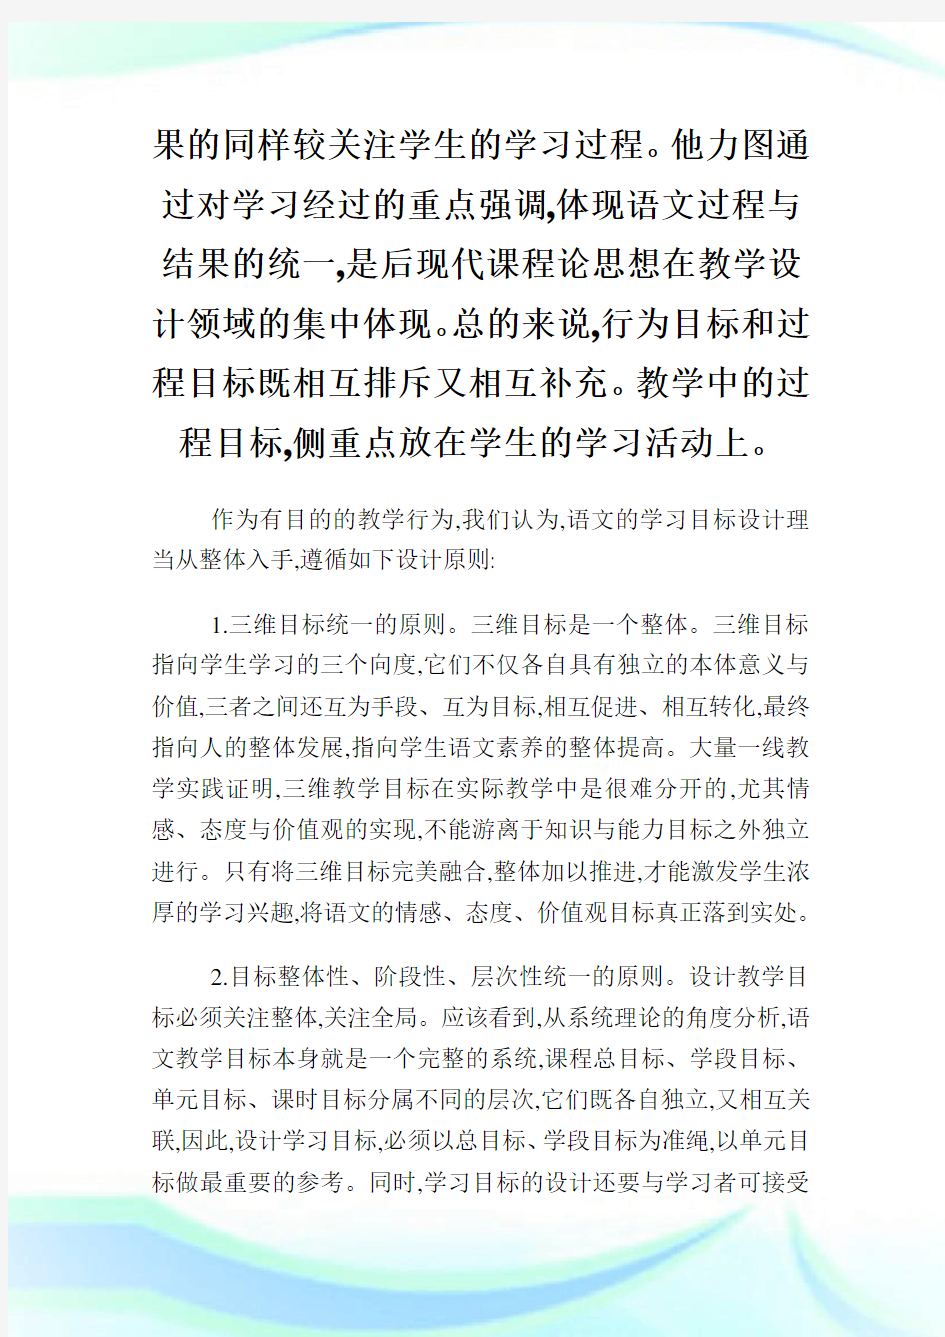 分析初中语文三维目标表述原则的创新.doc